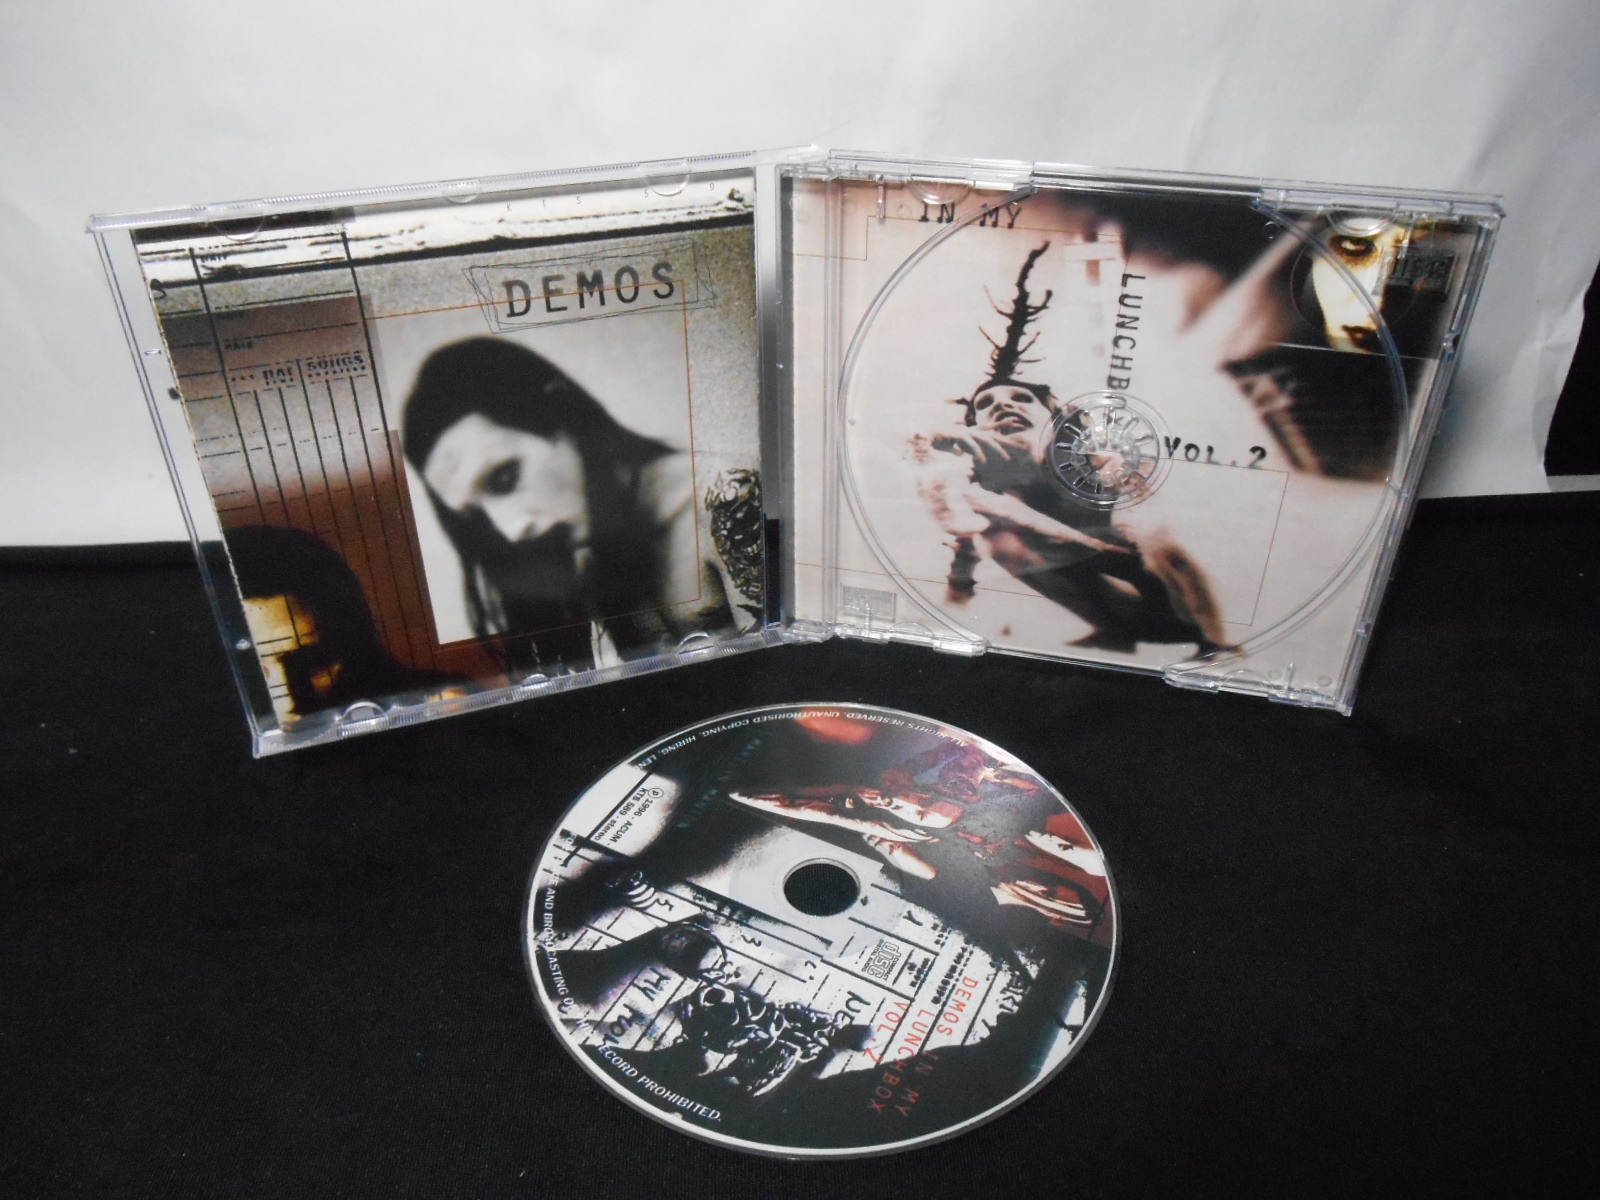 CD - Marilyn Manson - Demos In My Lunchbox Vol 2 (Bootleg/Italy)